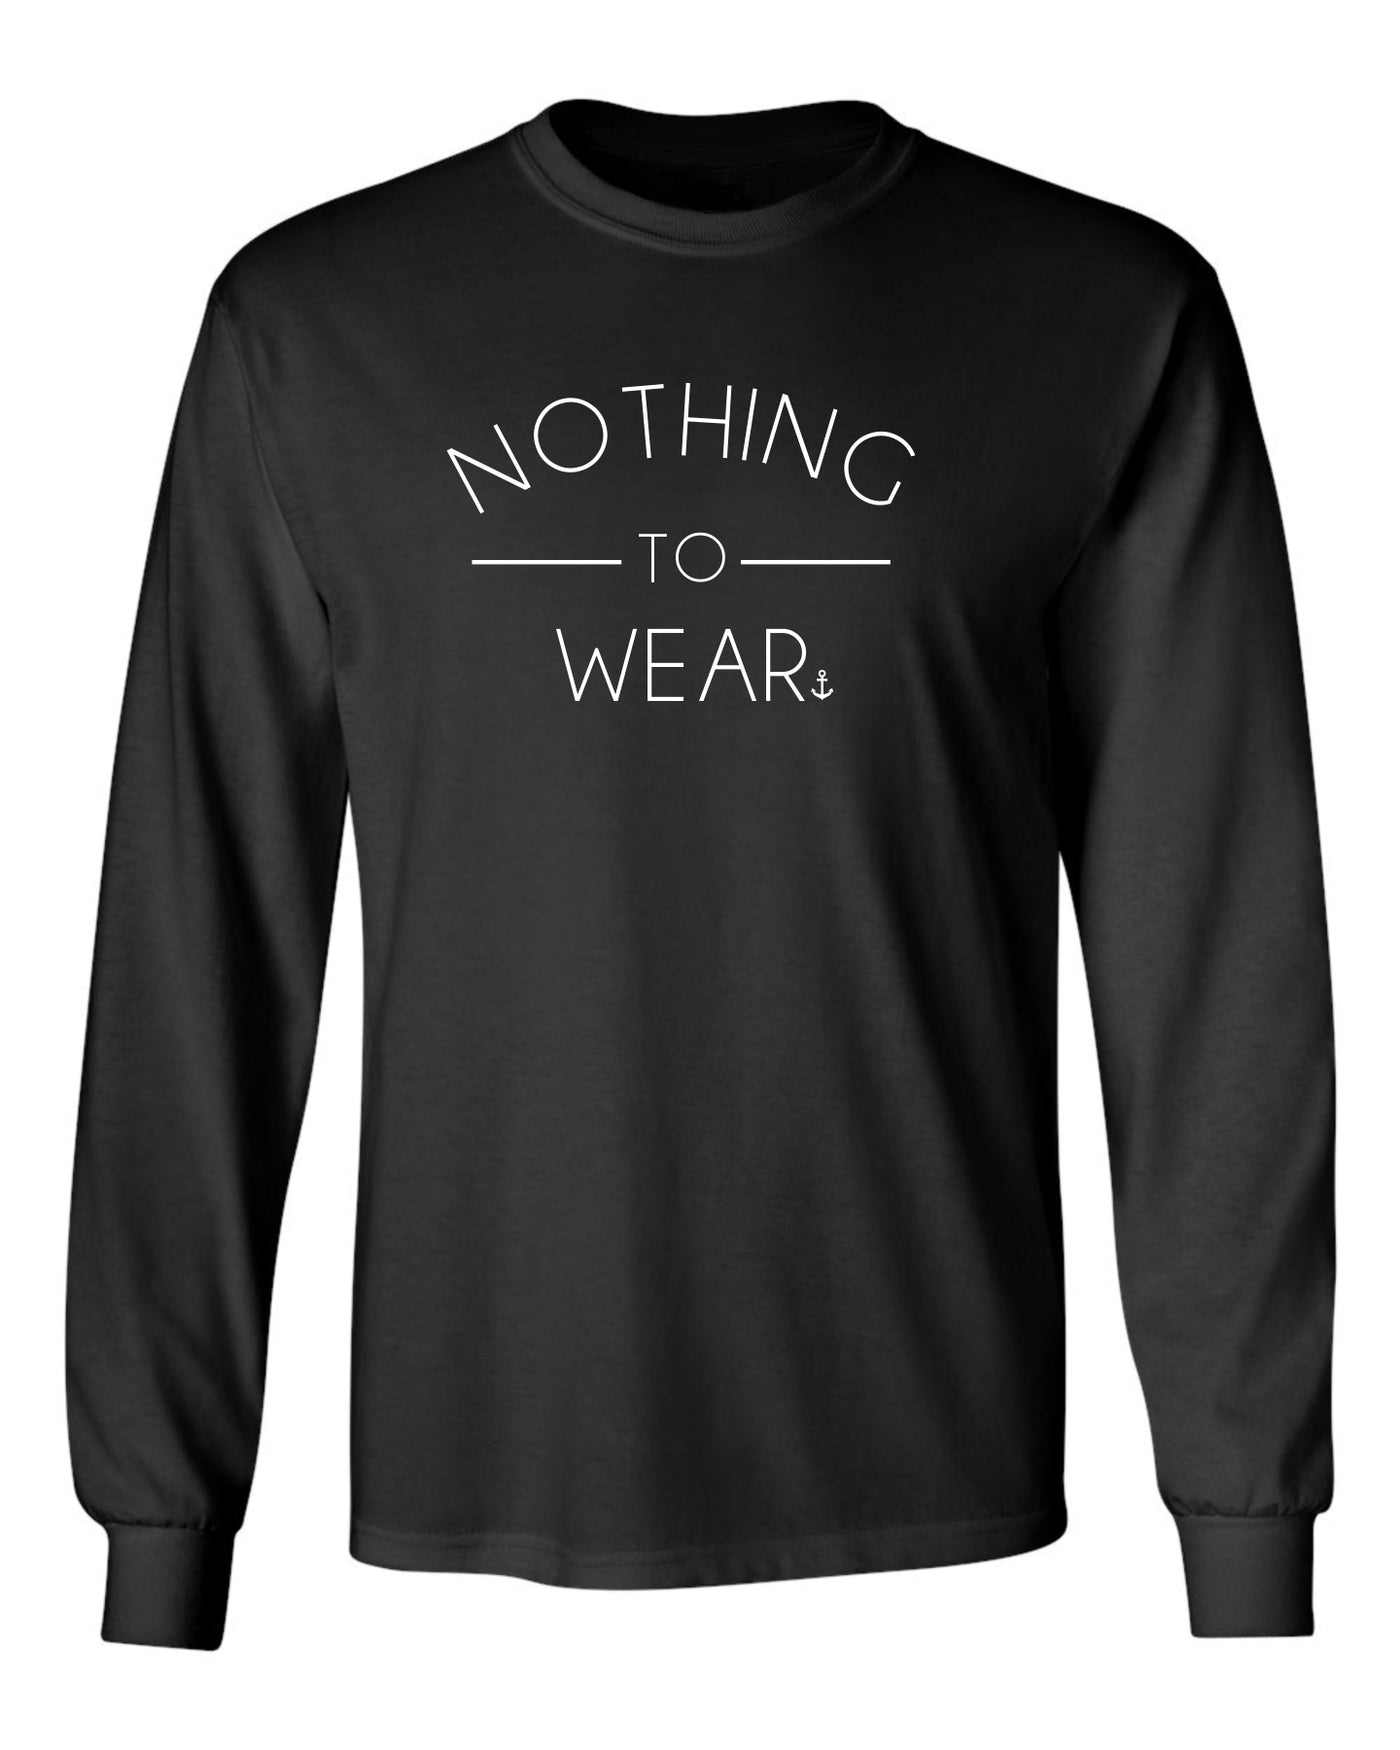 "Nothing To Wear" Unisex Long Sleeve Shirt